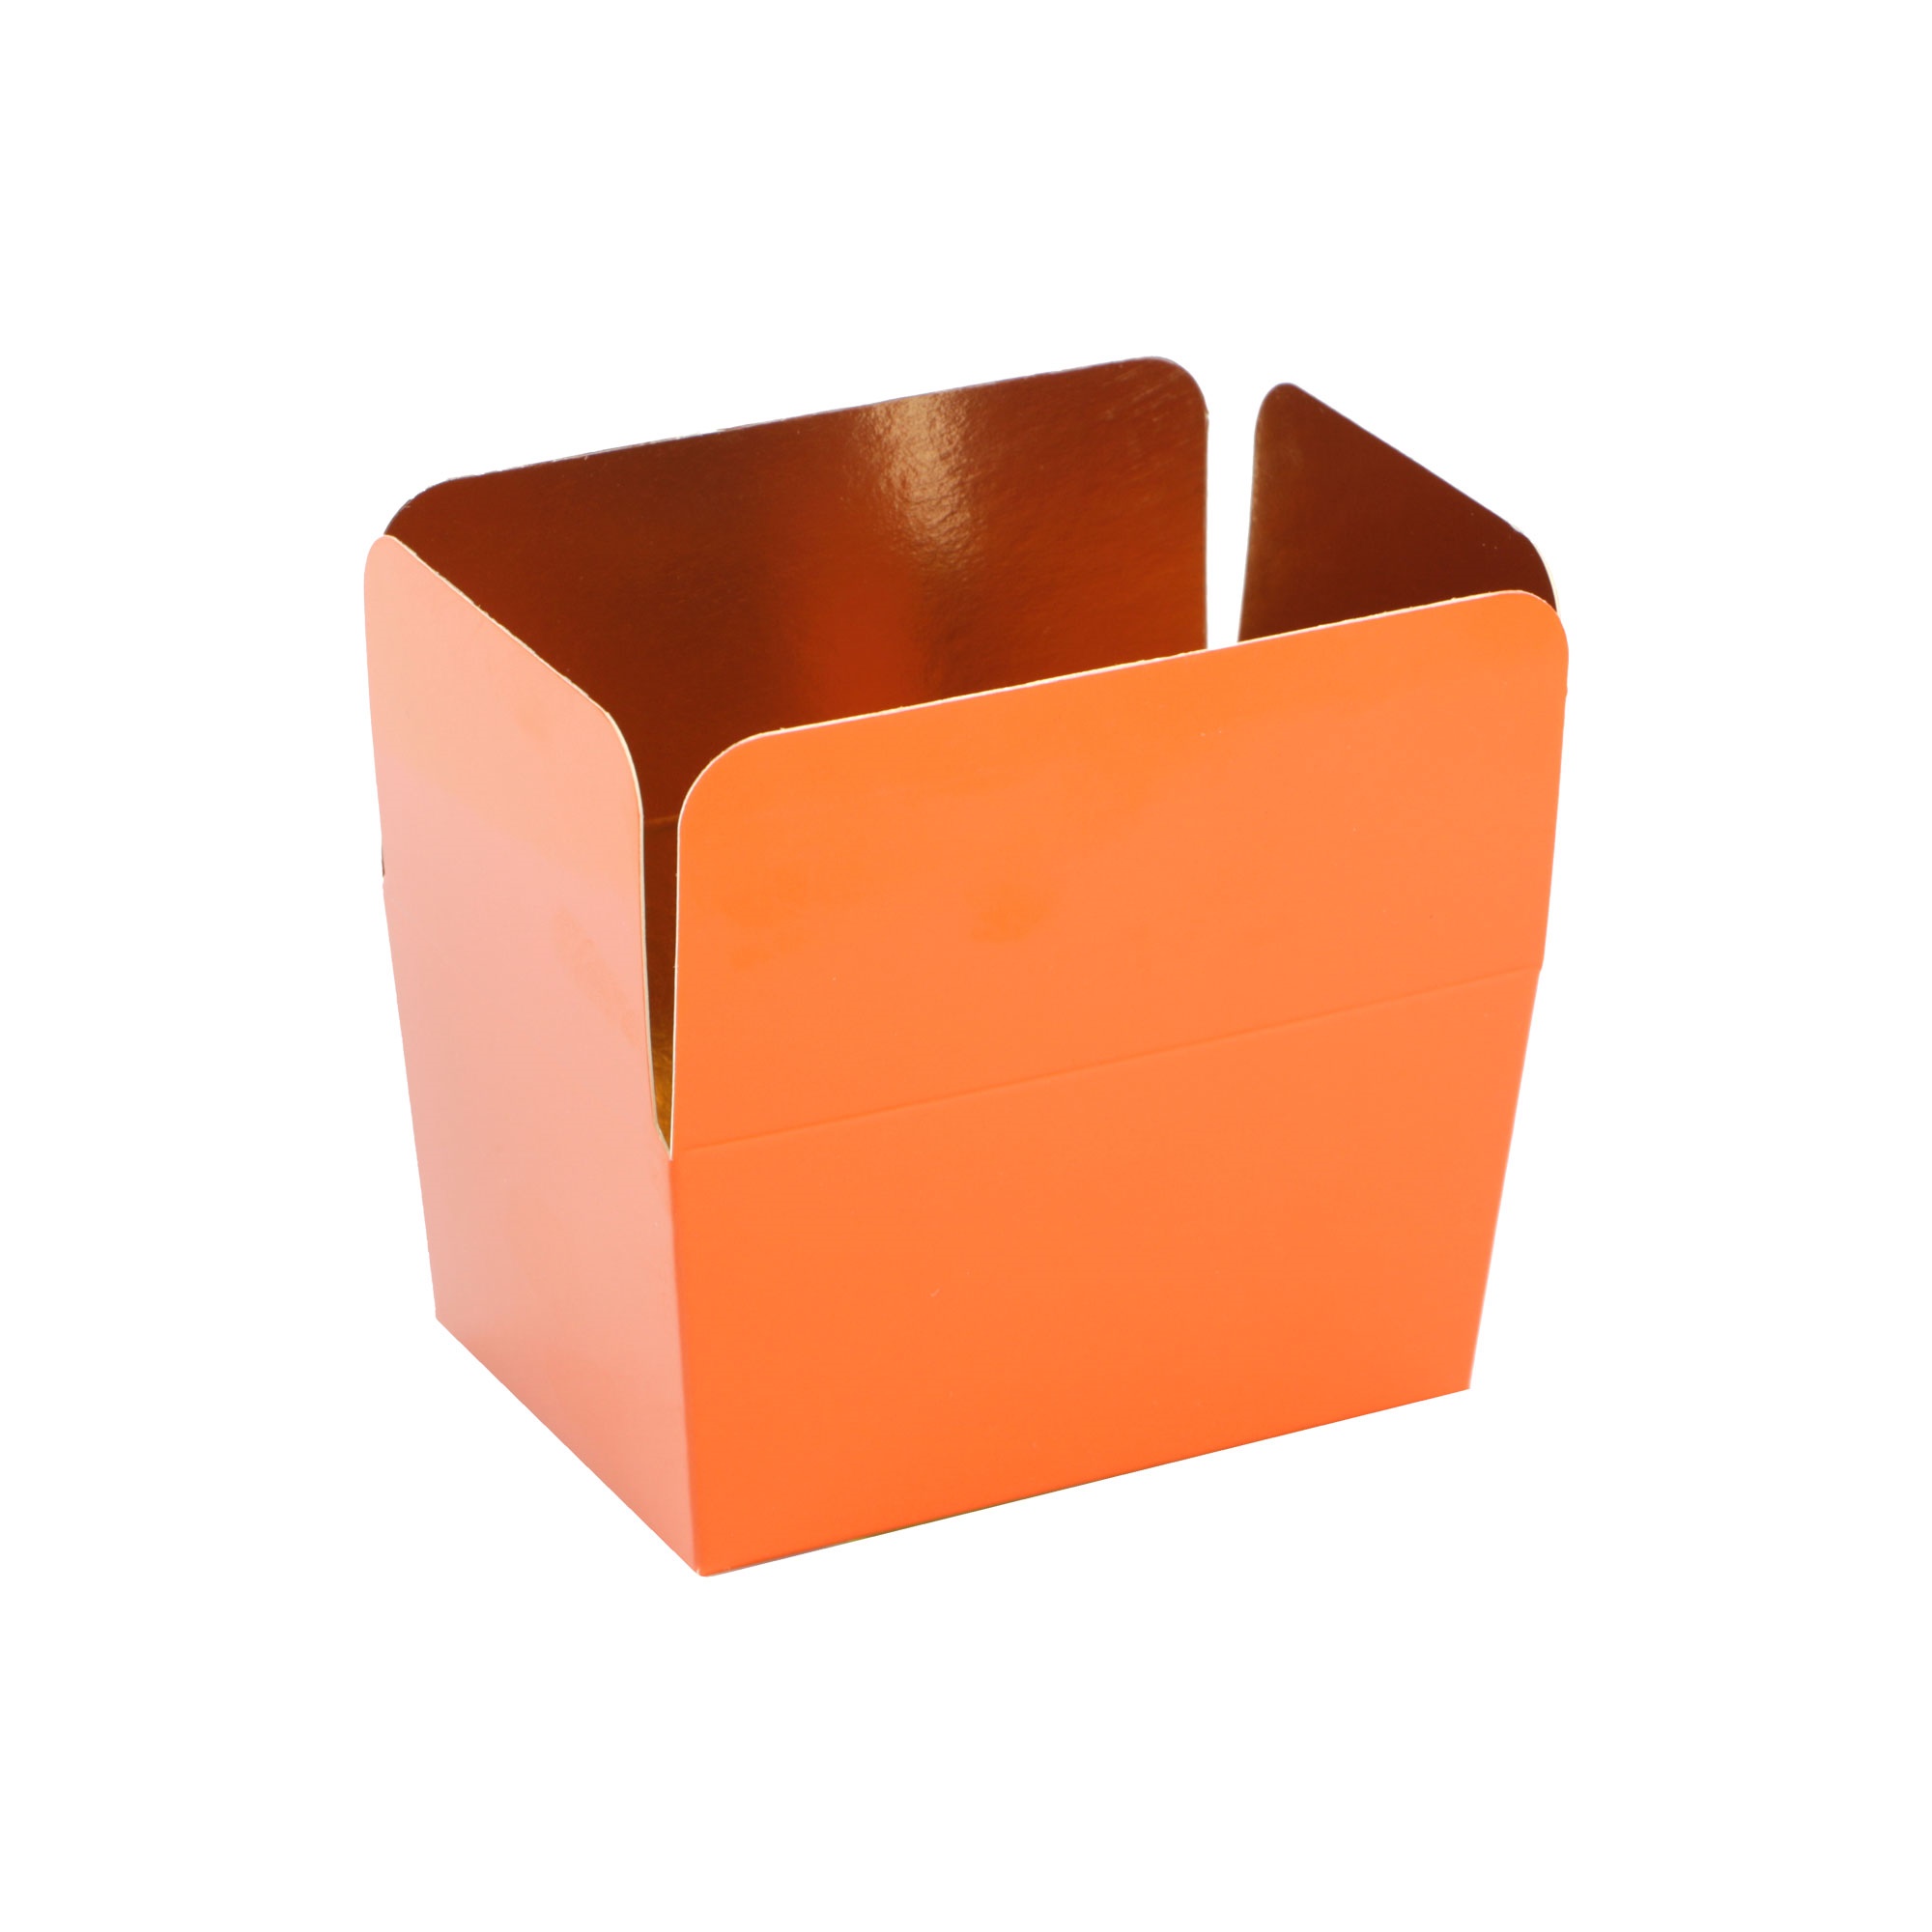 Afbeelding van Pak à 24 luxe bonbondoos 500 gram brique (oranje)